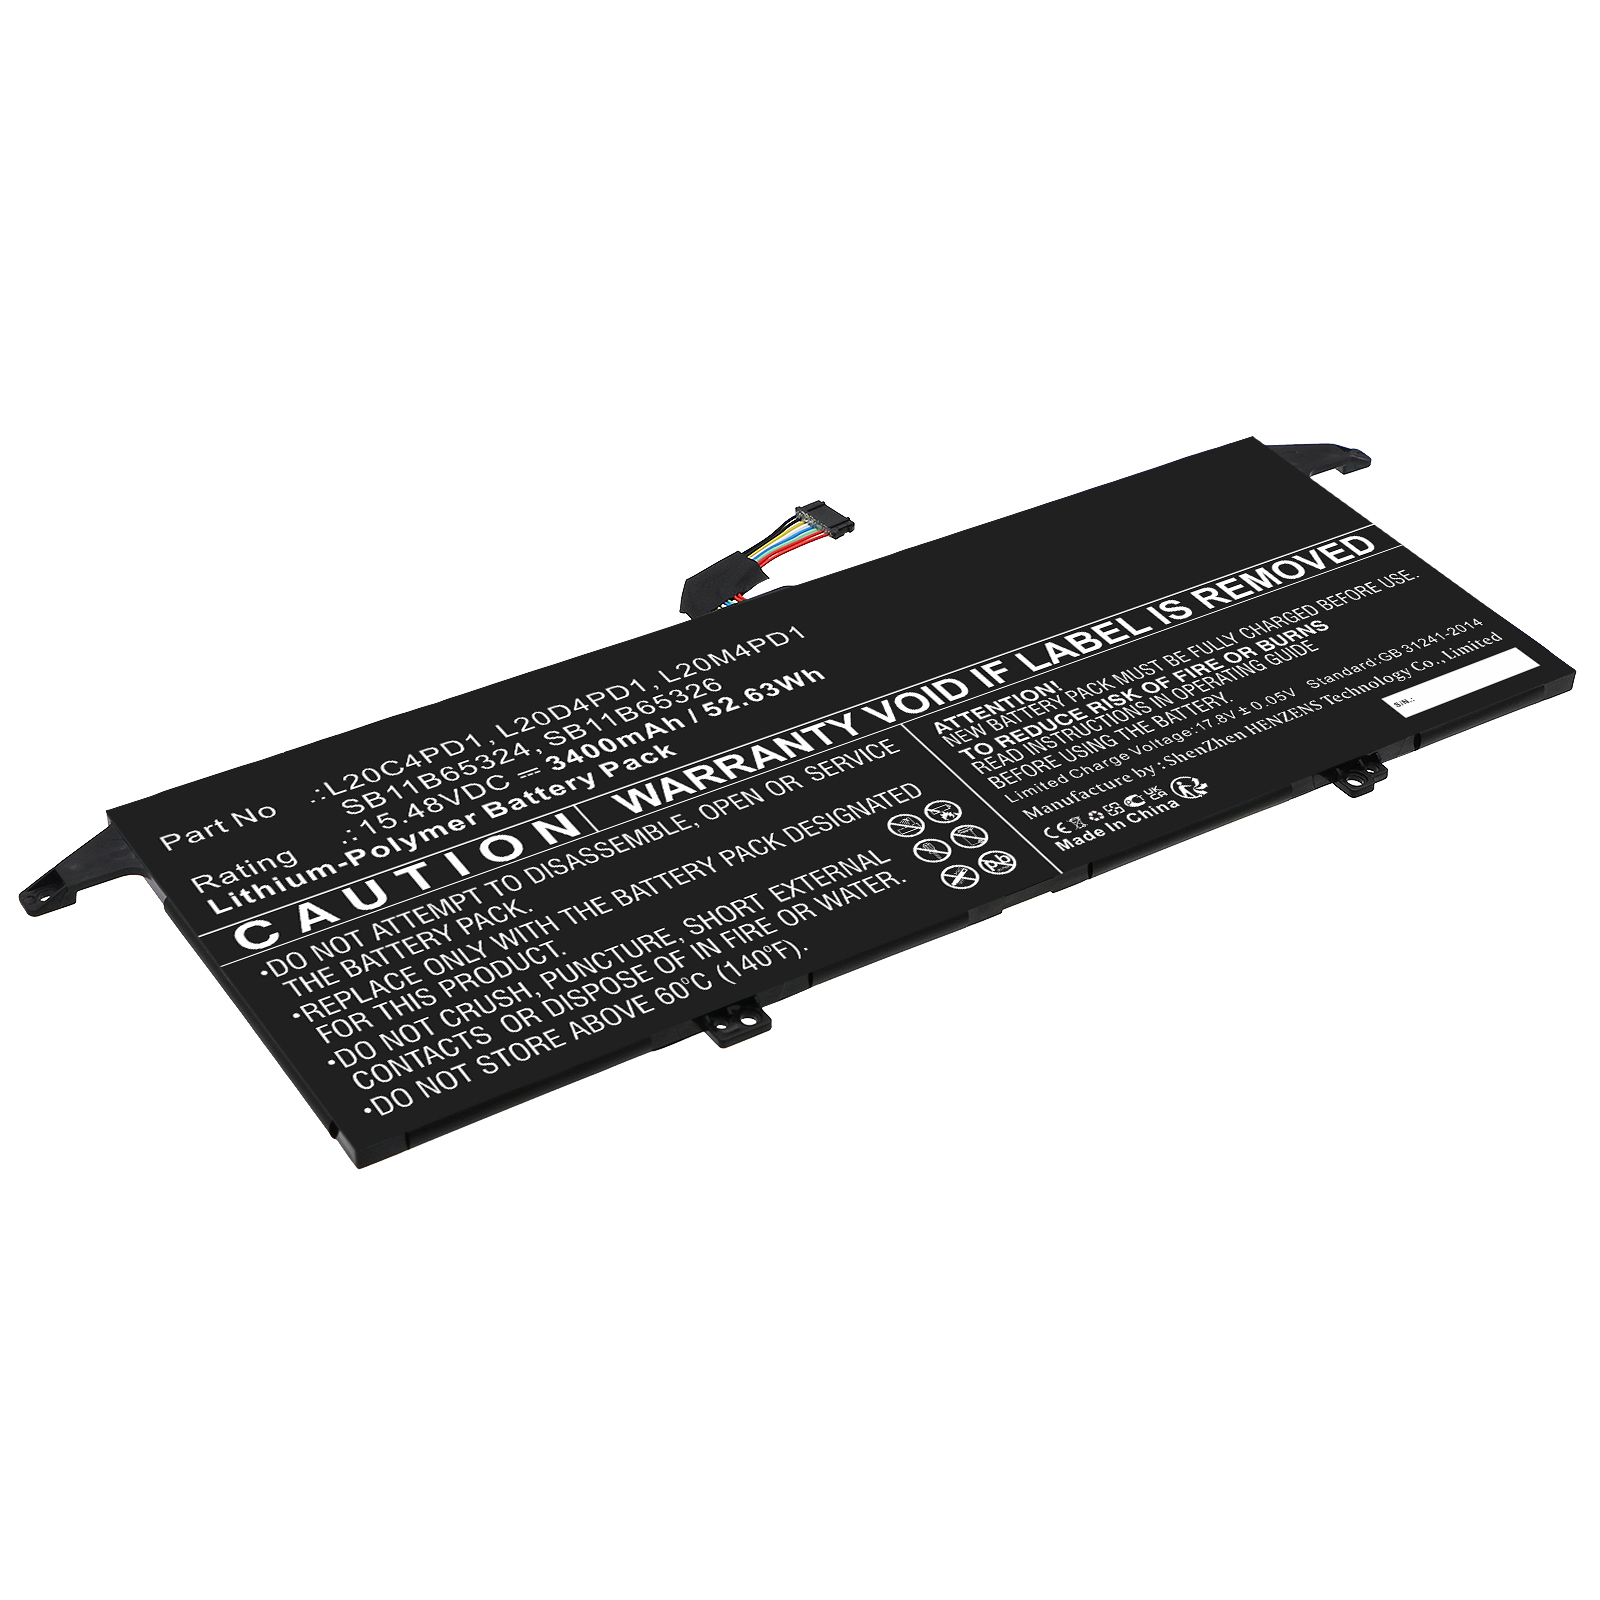 Synergy Digital Laptop Battery, Compatible with Lenovo L20C4PD1 Laptop Battery (Li-Pol, 15.48V, 3400mAh)